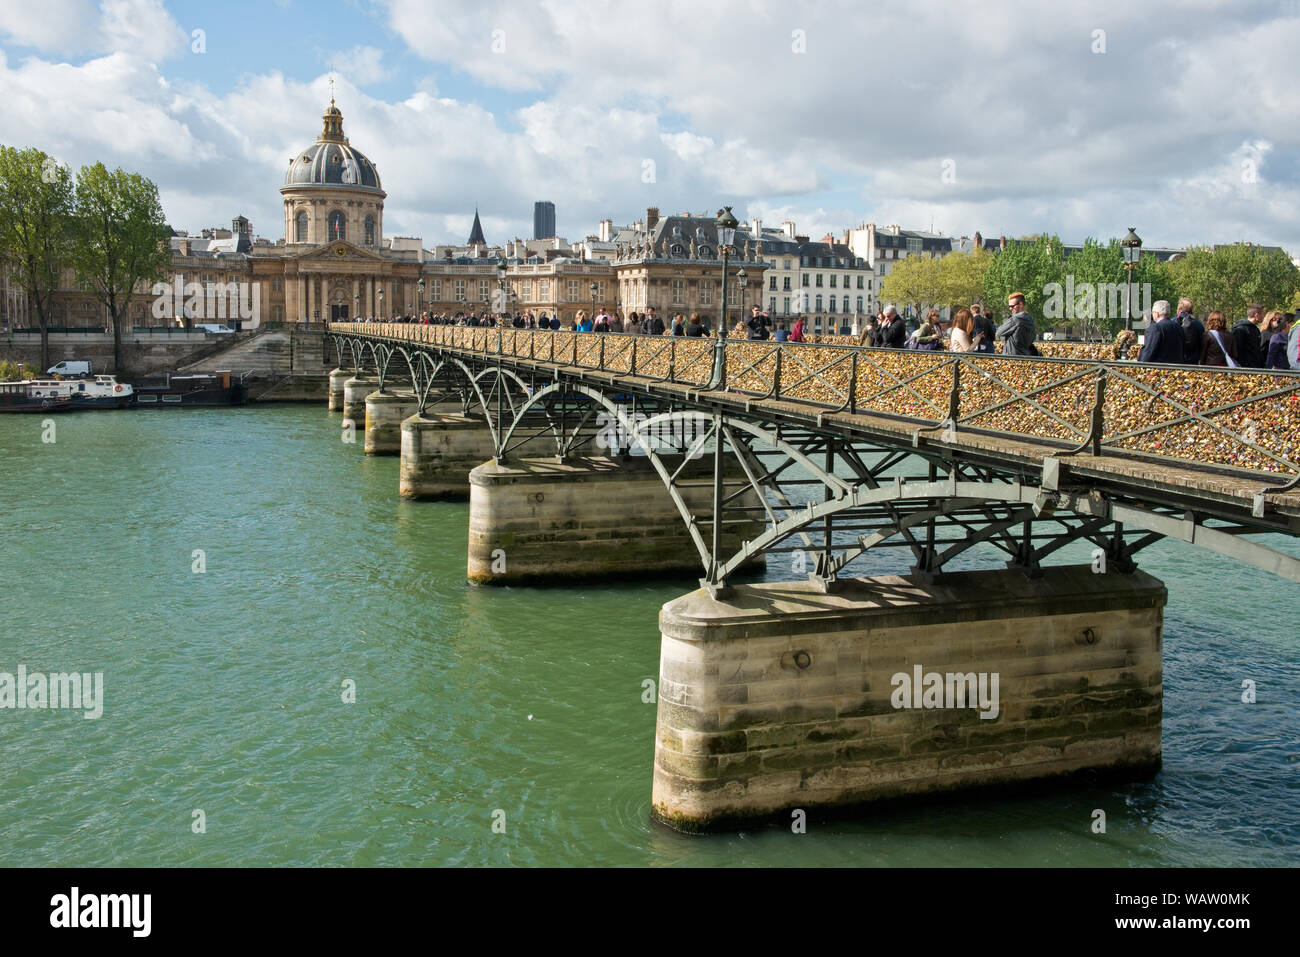 Pont de Artes footbridge across the Seine River to the Institut de France. Paris, France. Stock Photo